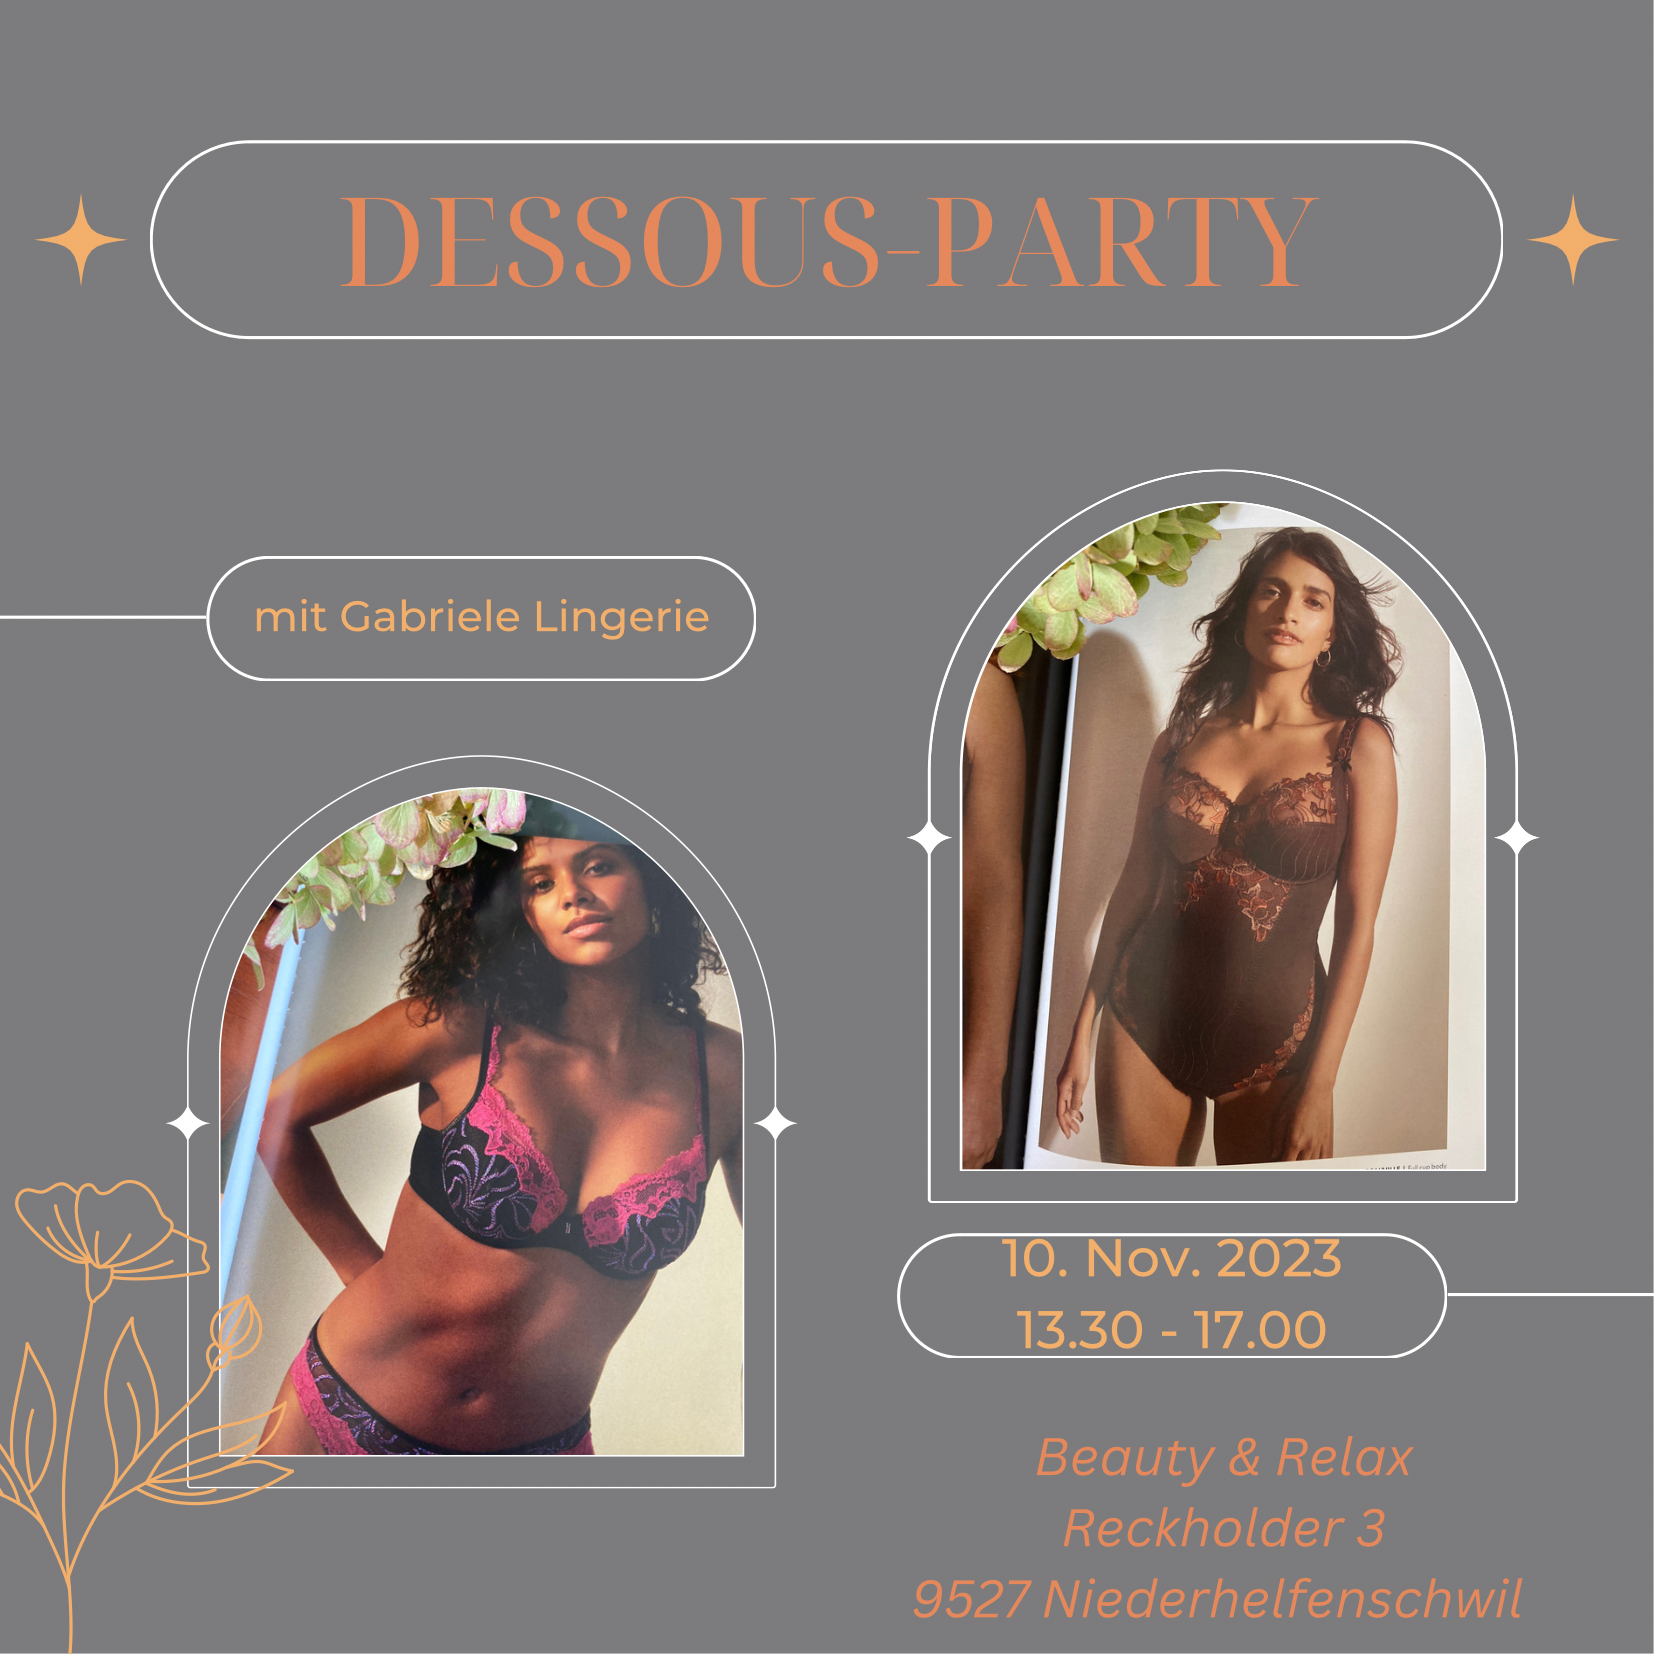 Nächste Dessous Party am 10. November von 13.30 bis 17.00